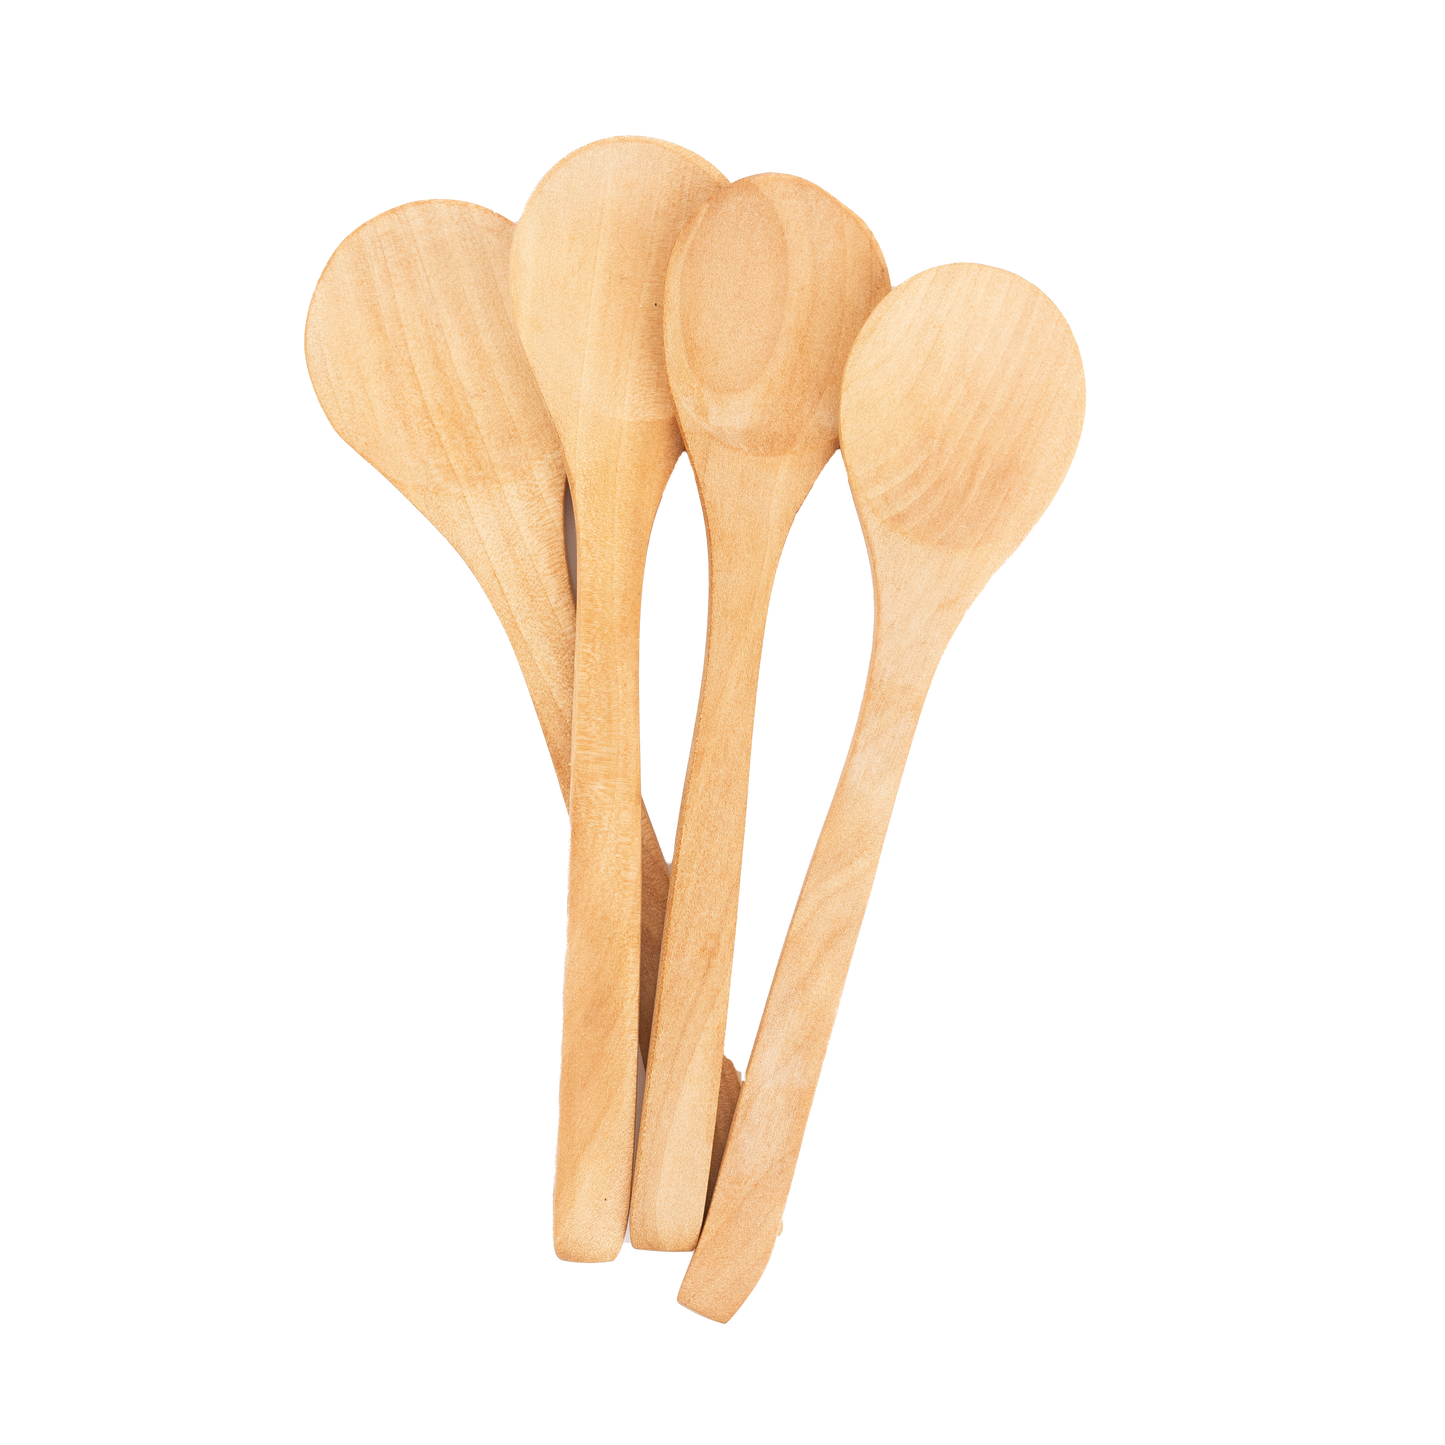 Flat Wooden Spoon